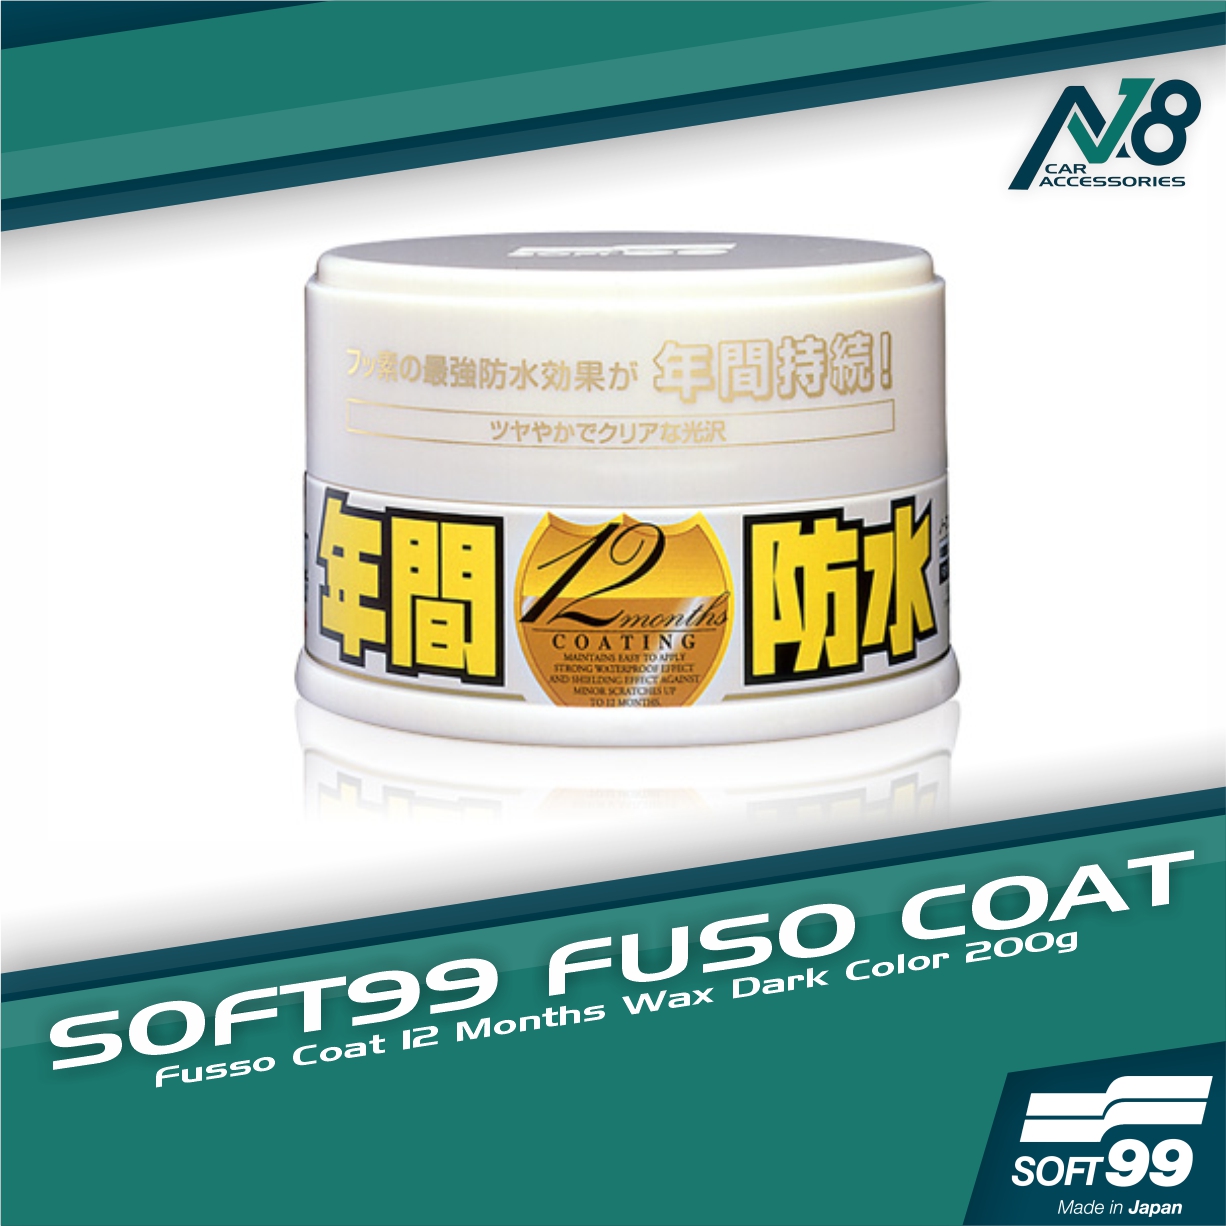 Soft99 Fusso Coat 12 Months Wax (Light Colours)